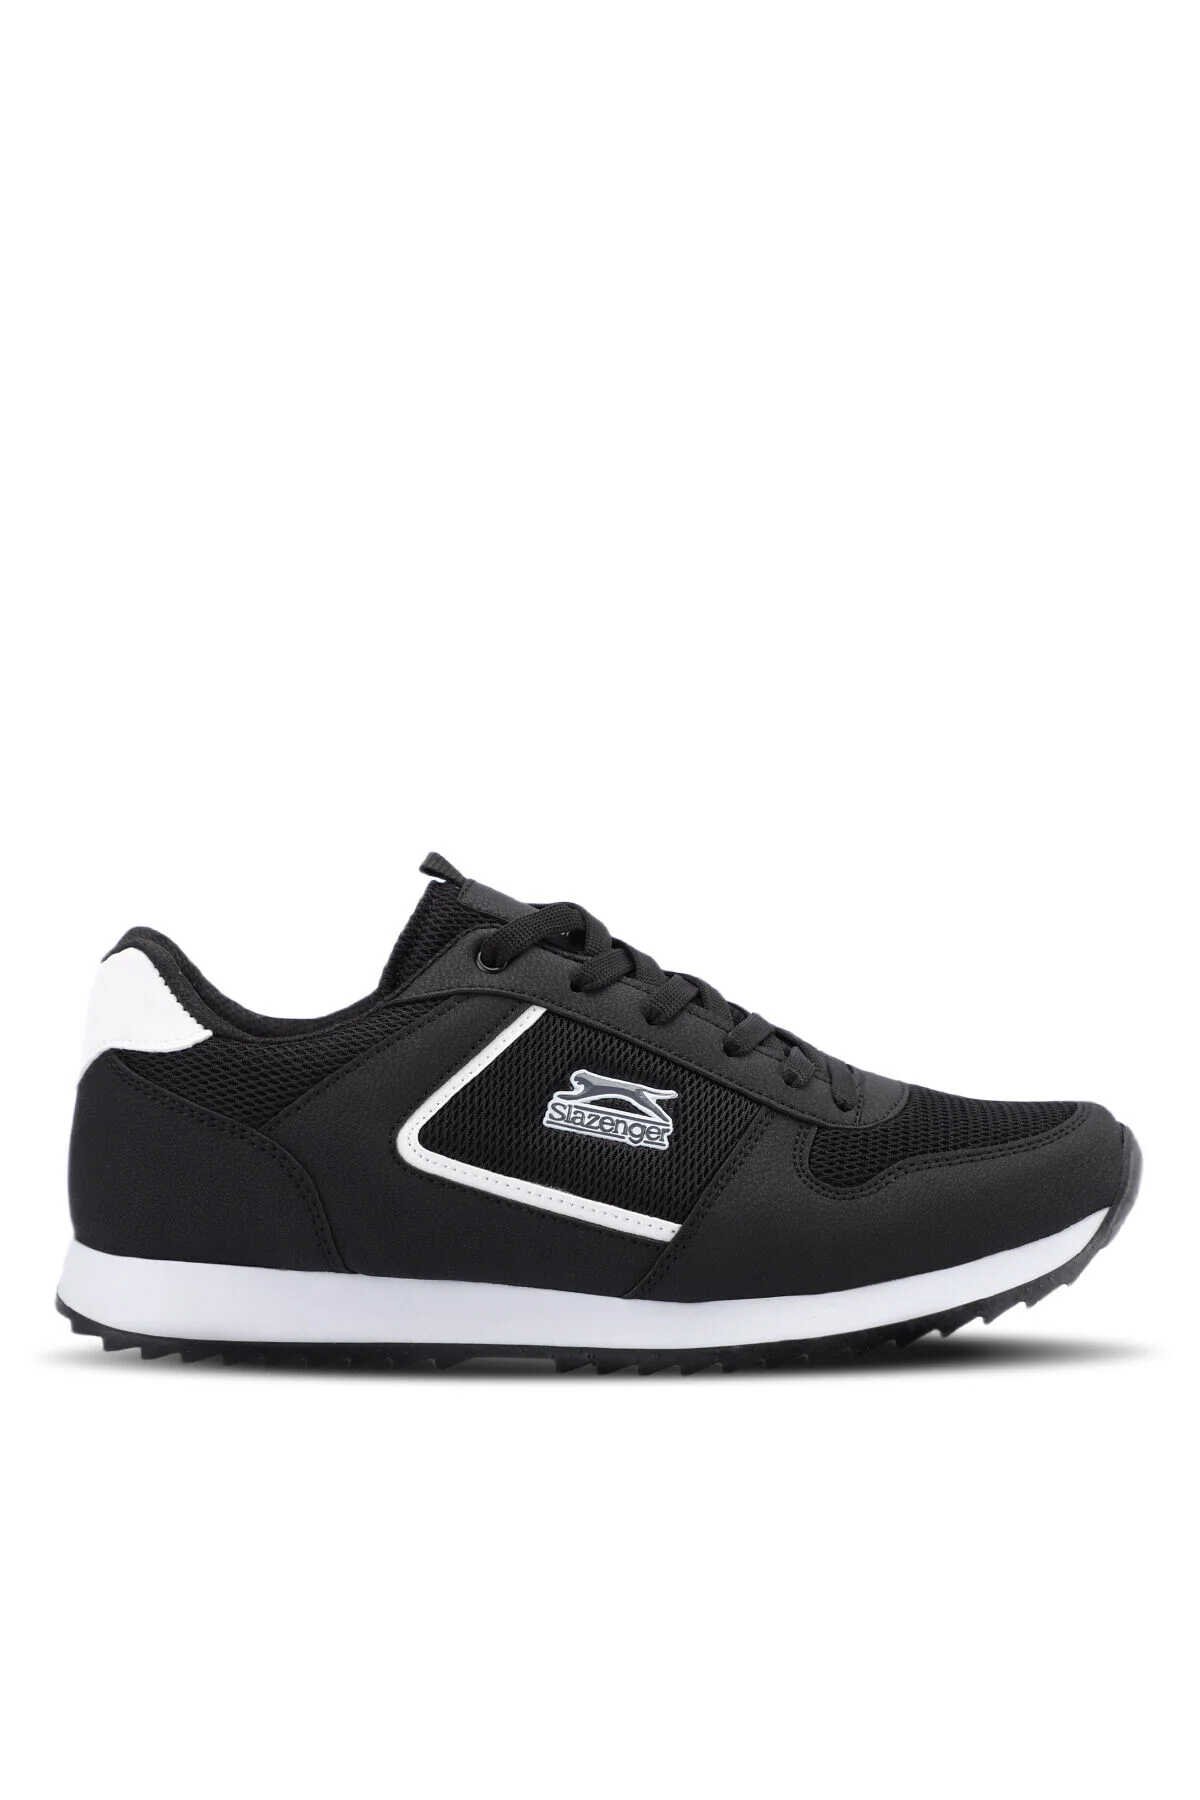 Slazenger - Slazenger ATTACK I Sneaker Erkek Ayakkabı Siyah / Beyaz